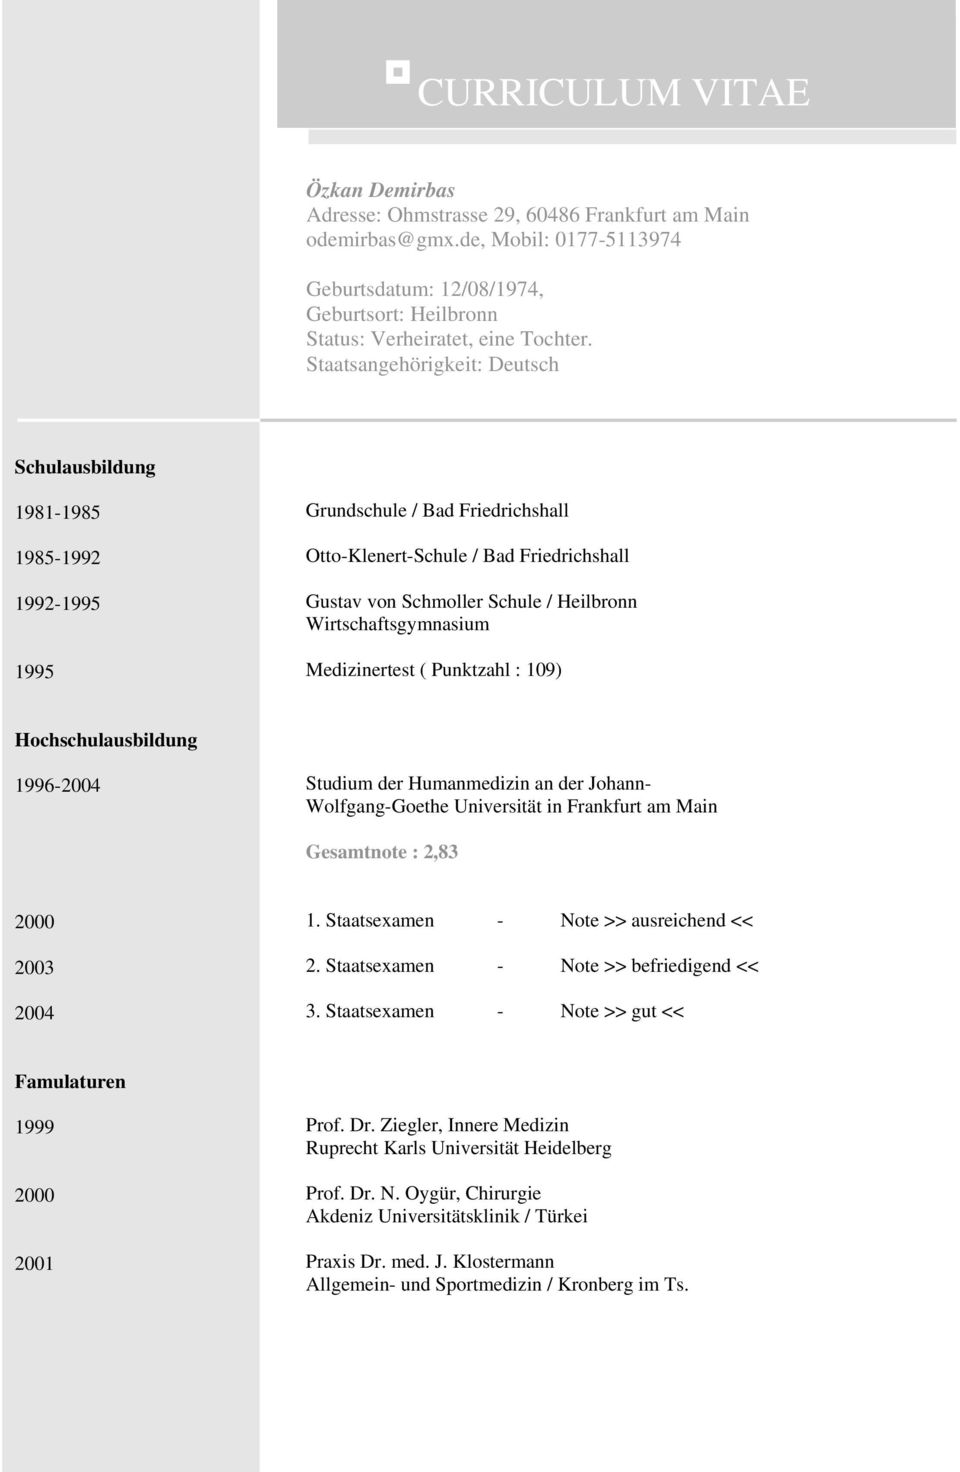 Wirtschaftsgymnasium Medizinertest ( Punktzahl : 109) Hochschulausbildung 1996-2004 Studium der Humanmedizin an der Johann- Wolfgang-Goethe Universität in Frankfurt am Main Gesamtnote : 2,83 2000